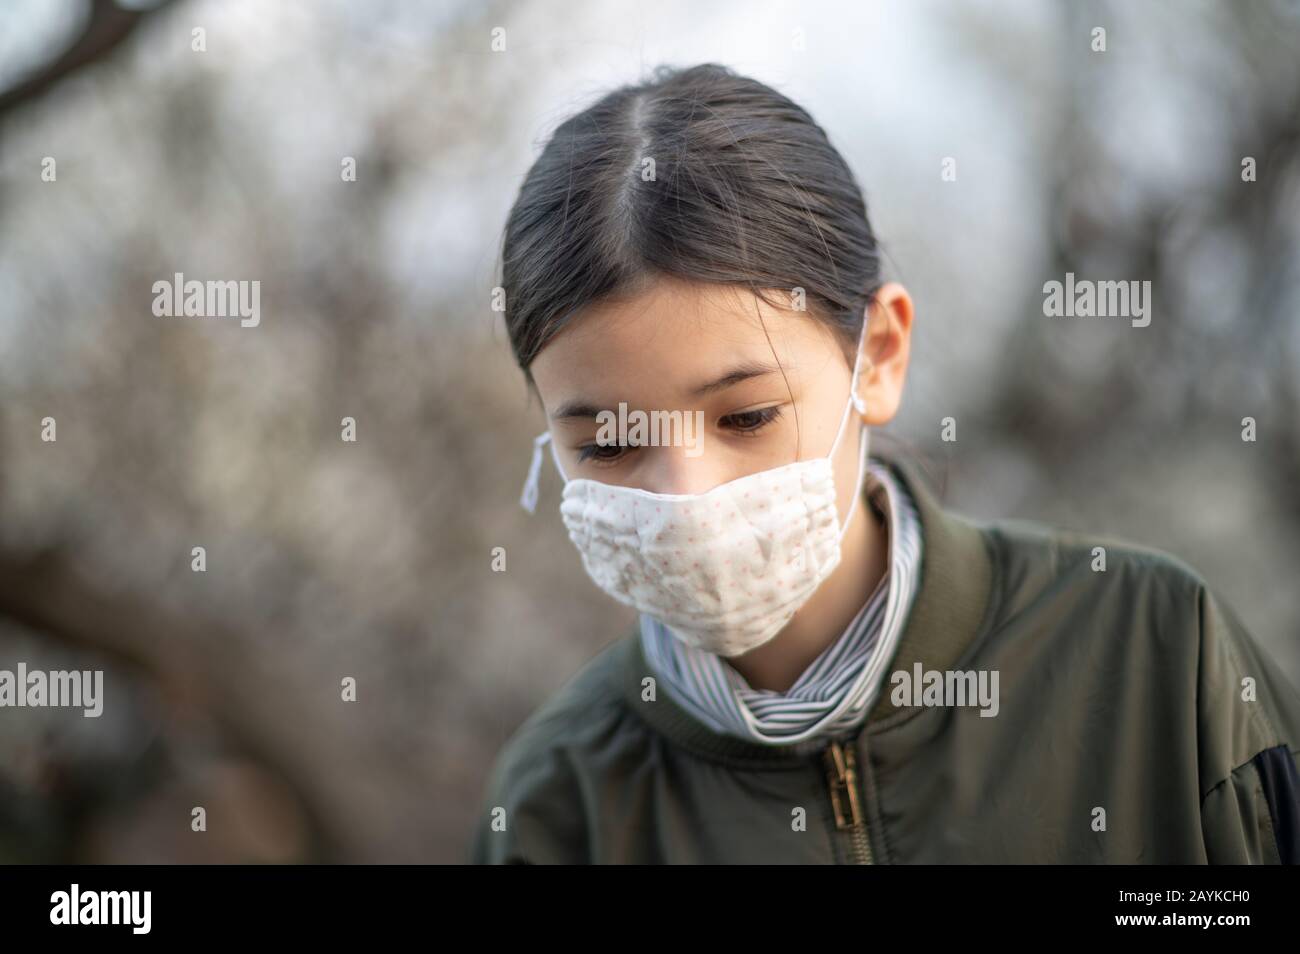 Junges Mädchen / Kind mit gemischter asiatischer - europäischer Ethnie trägt eine Gesichtsmaske, um Viren / Allergien zu vermeiden. Nahaufnahme von Außenaufnahmen während Covid-19. Stockfoto